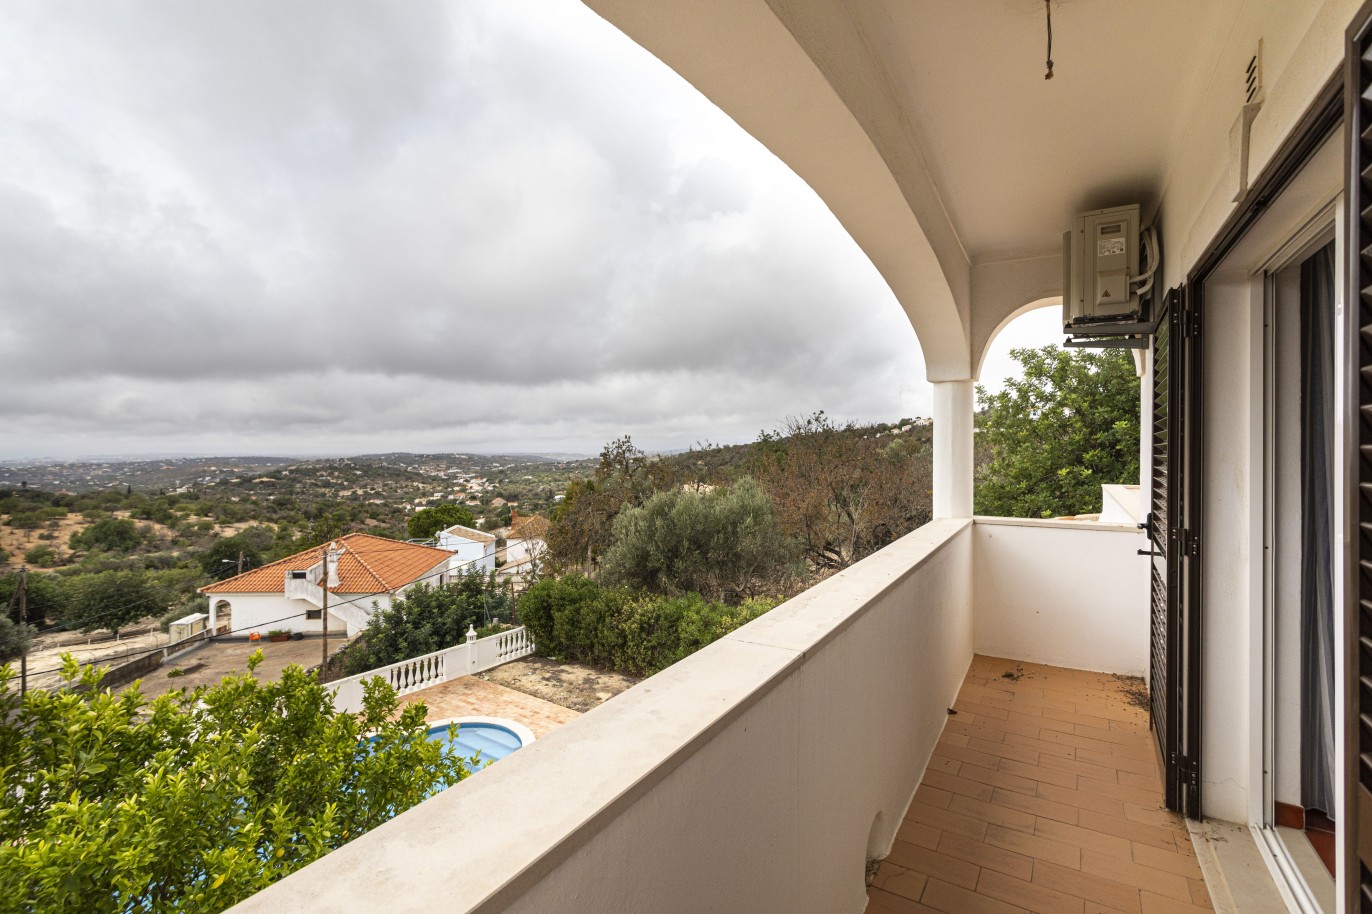 Moradia V4, com piscina, para venda, em Boliqueime, Loulé, Algarve_242620